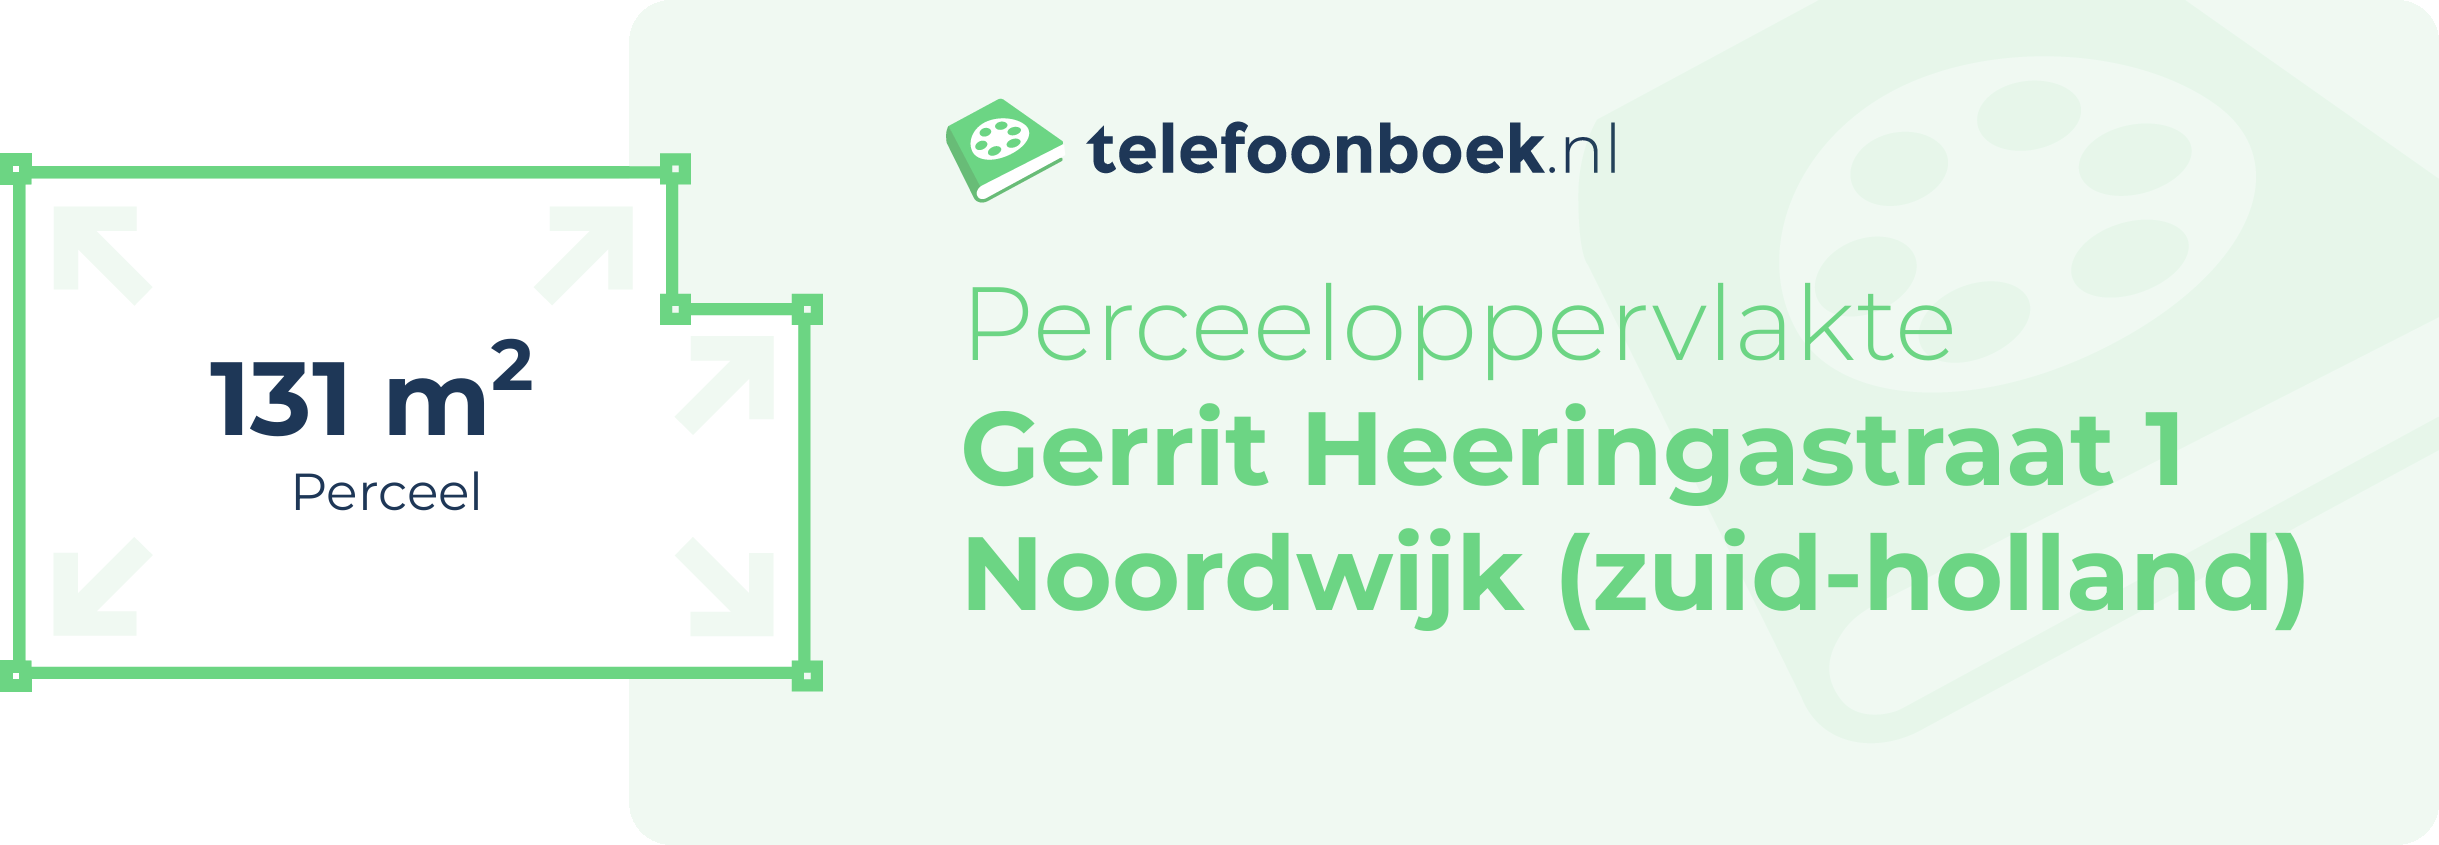 Perceeloppervlakte Gerrit Heeringastraat 1 Noordwijk (Zuid-Holland)